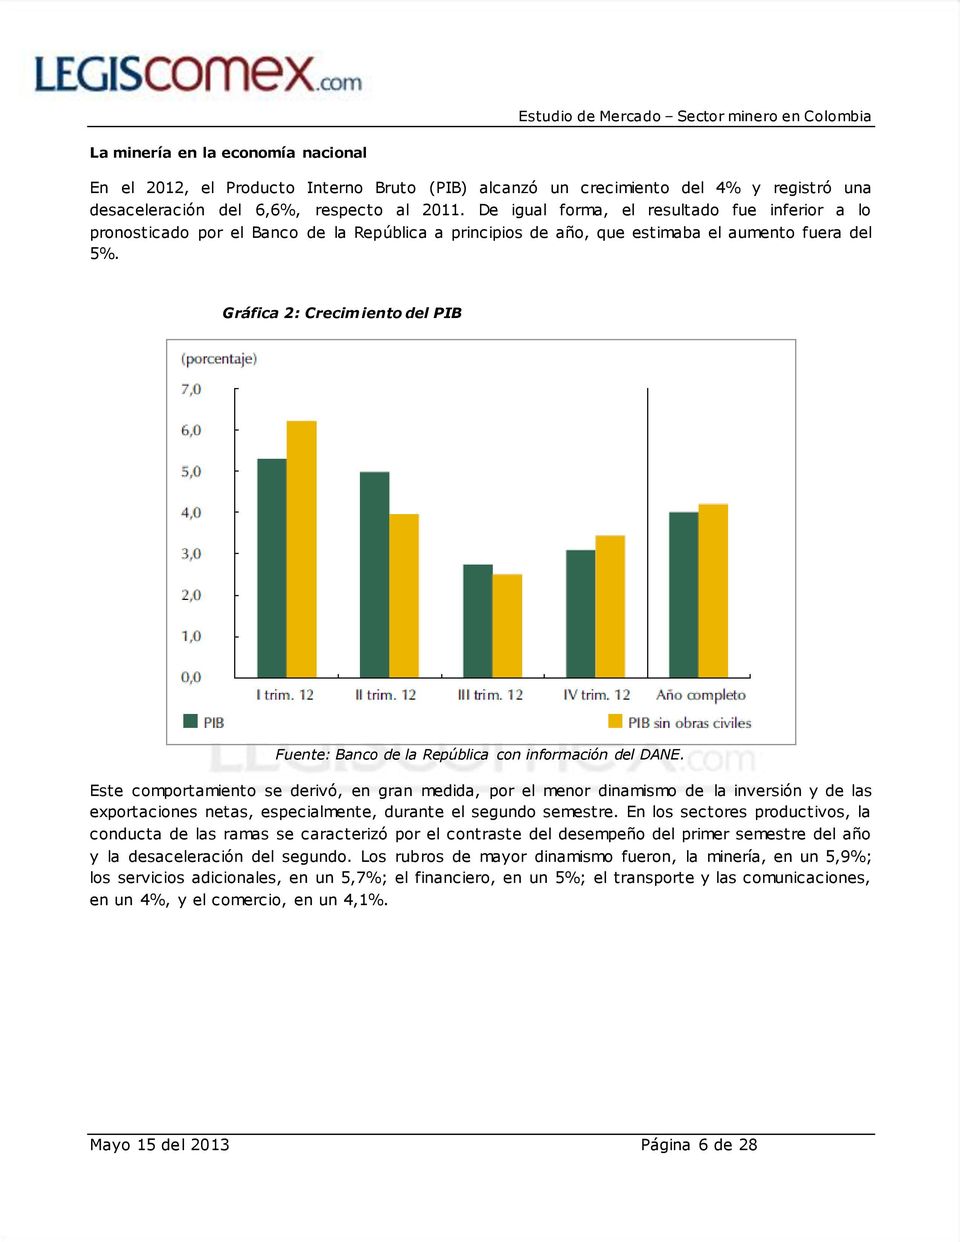 Gráfica 2: Crecimiento del PIB Fuente: Banco de la República con información del DANE.